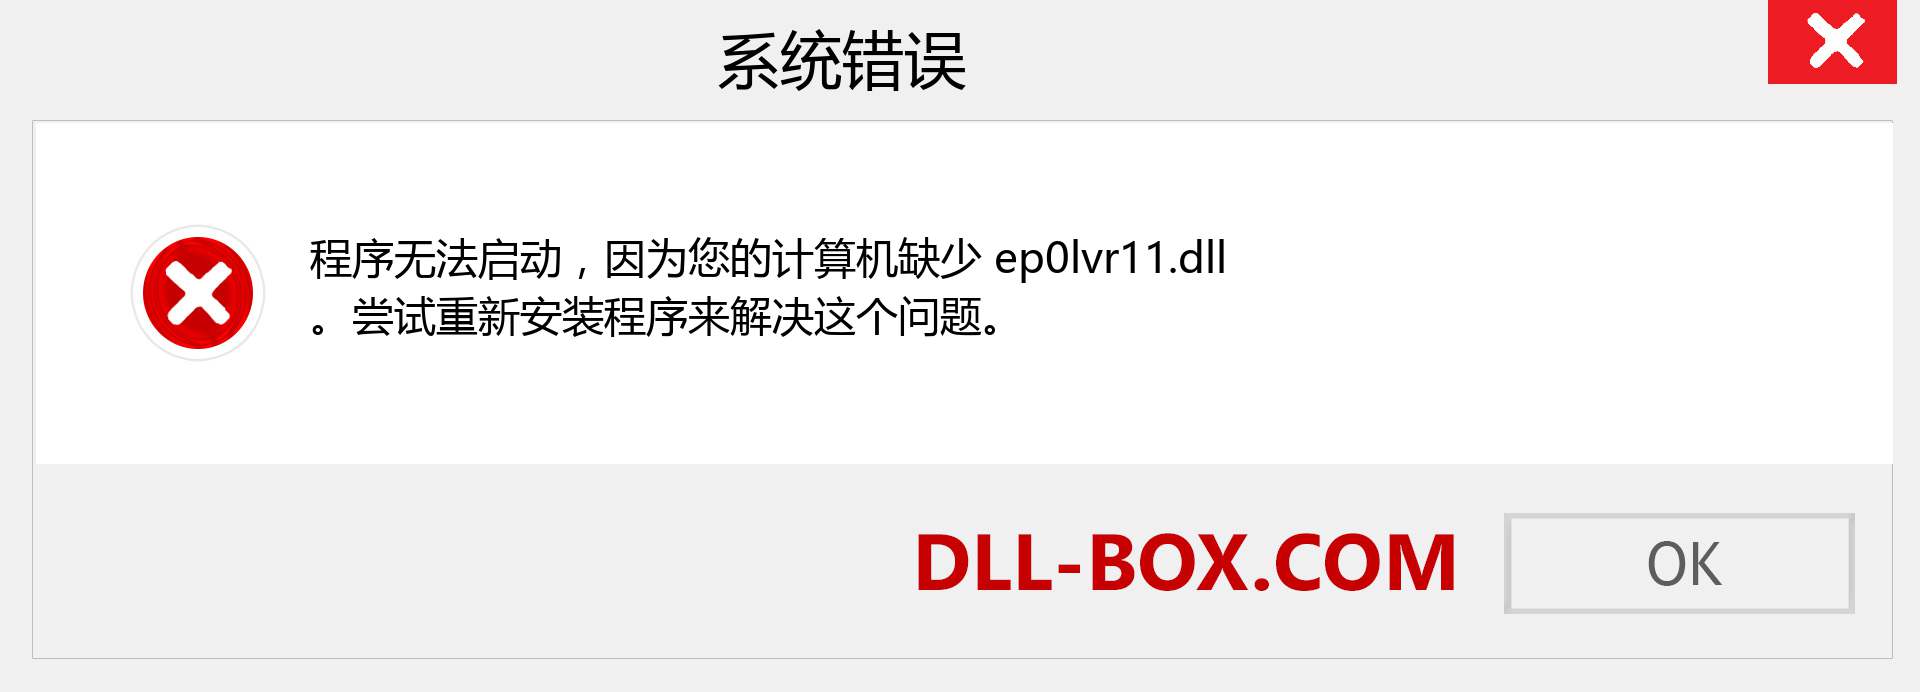 ep0lvr11.dll 文件丢失？。 适用于 Windows 7、8、10 的下载 - 修复 Windows、照片、图像上的 ep0lvr11 dll 丢失错误